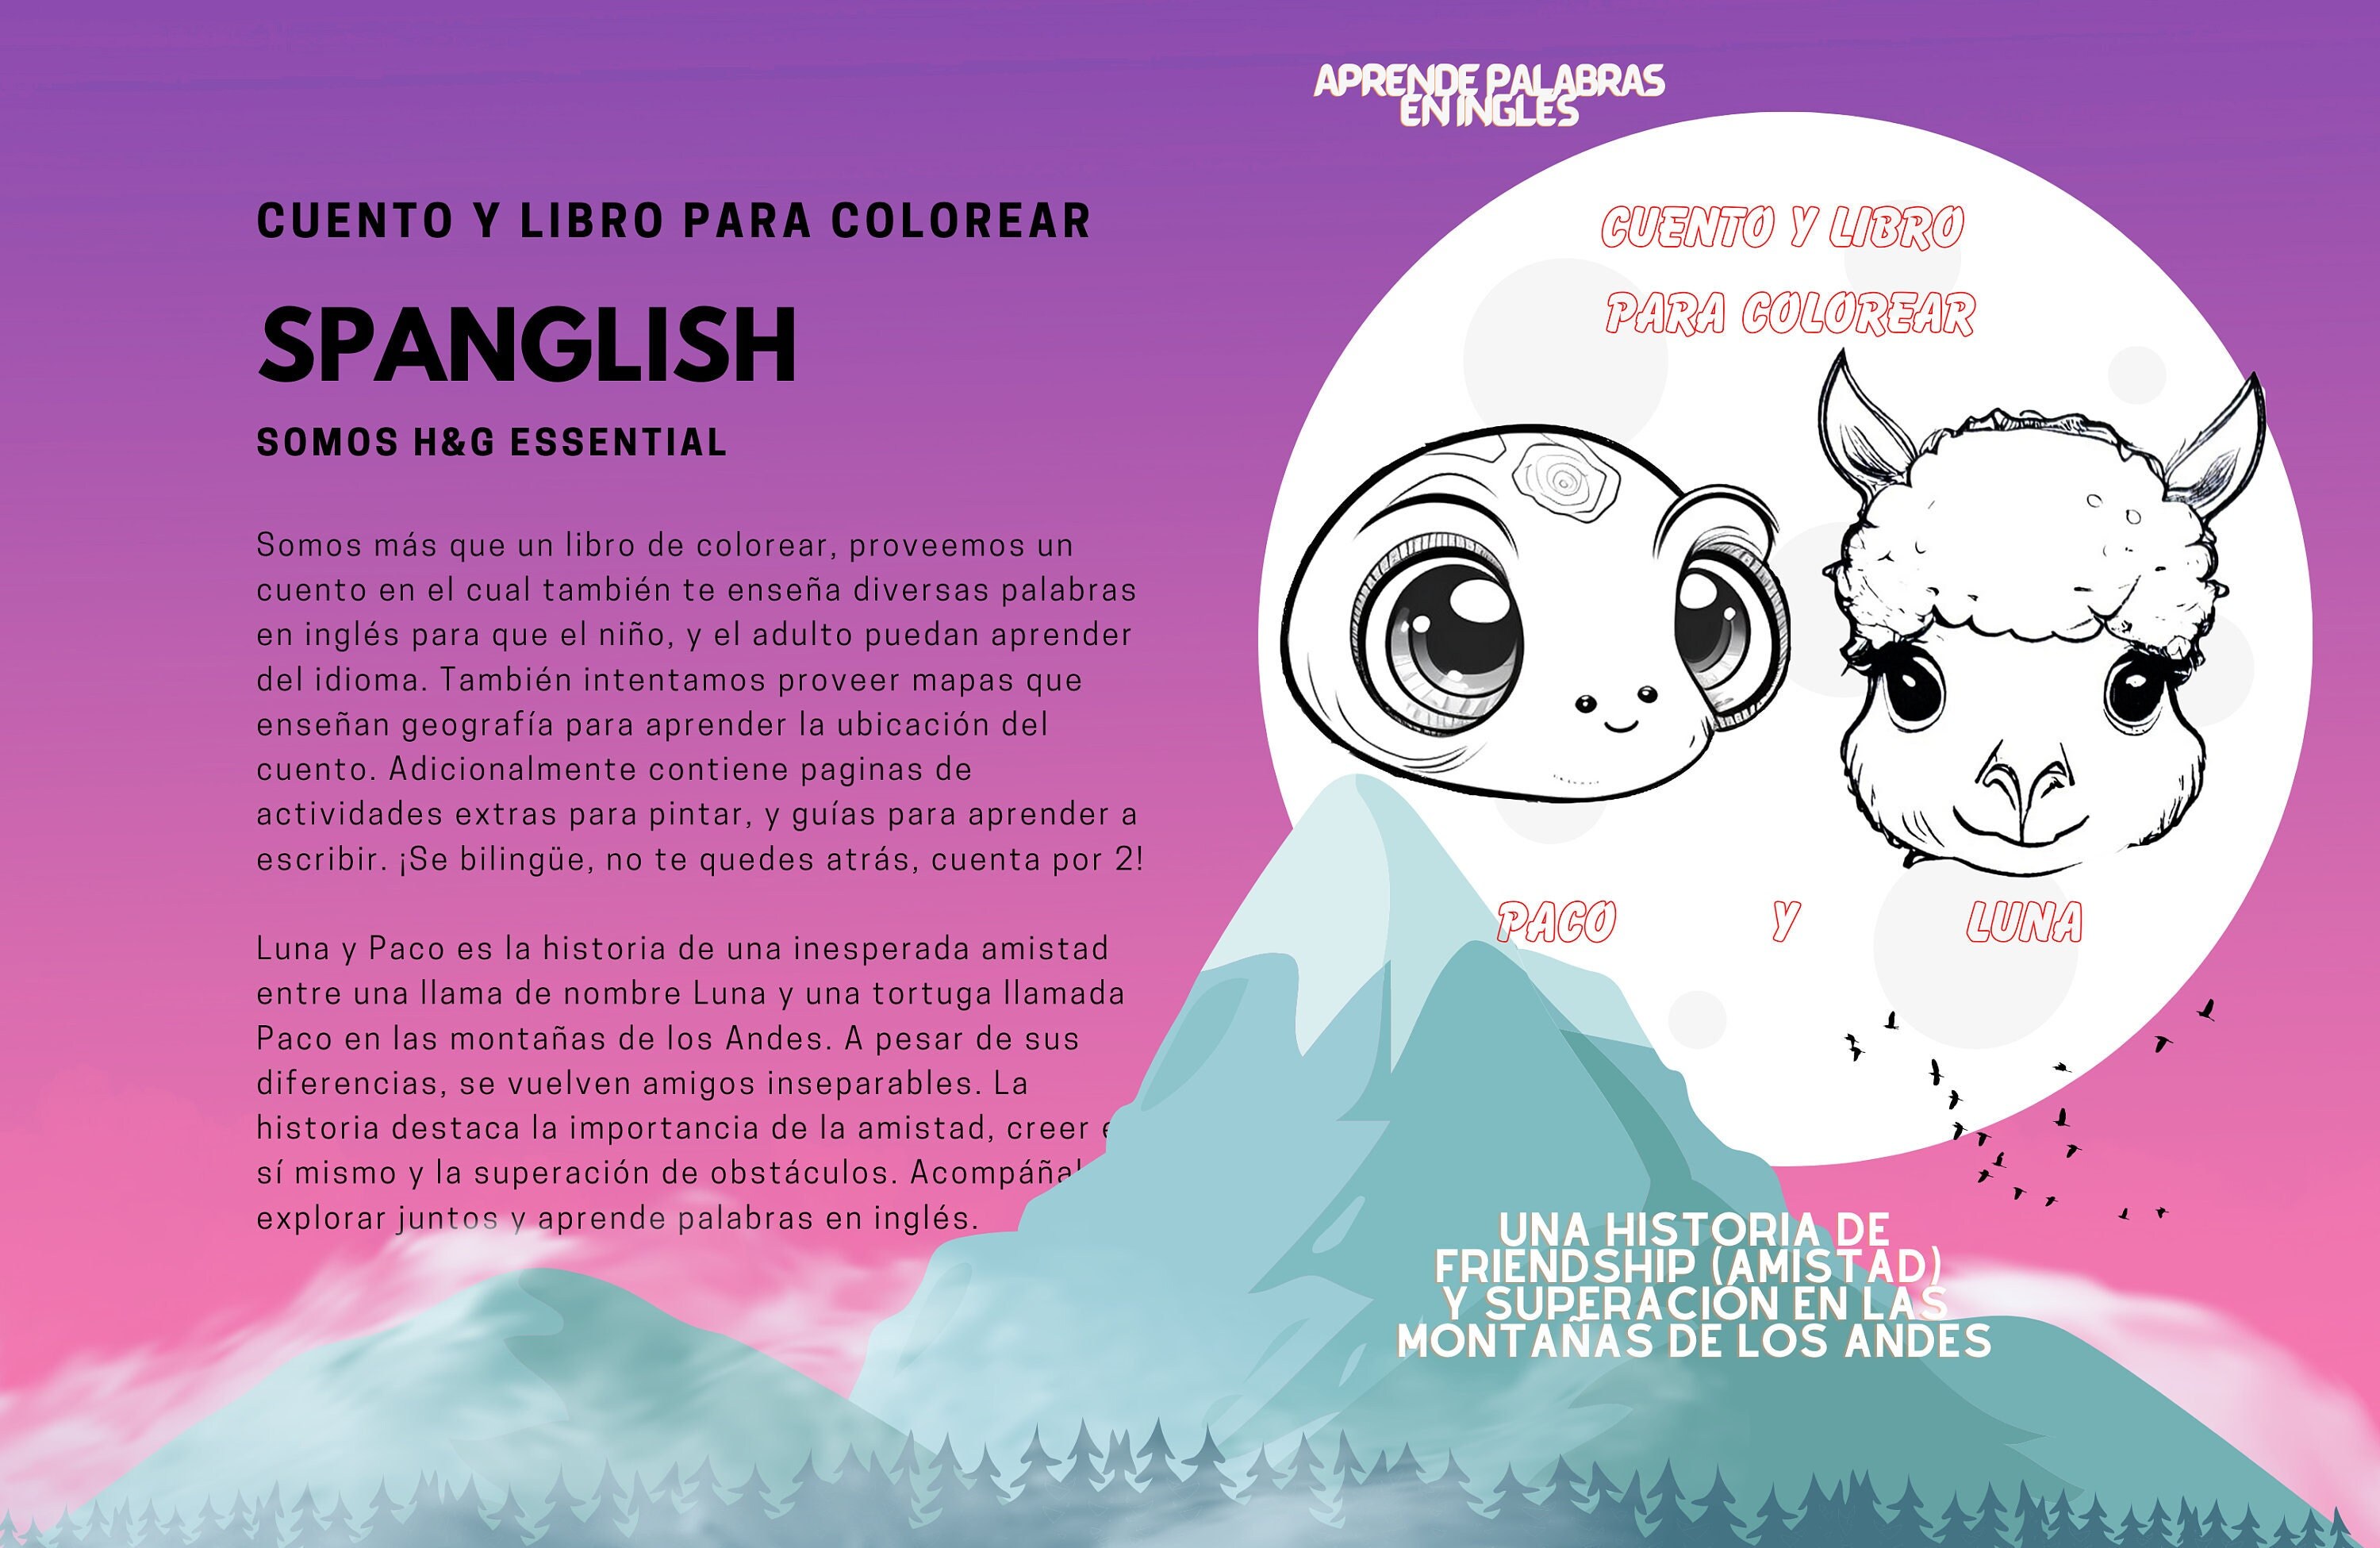 Printable coloring book imprime libro para colorear pdf file bilingual aprende palabras en ingles